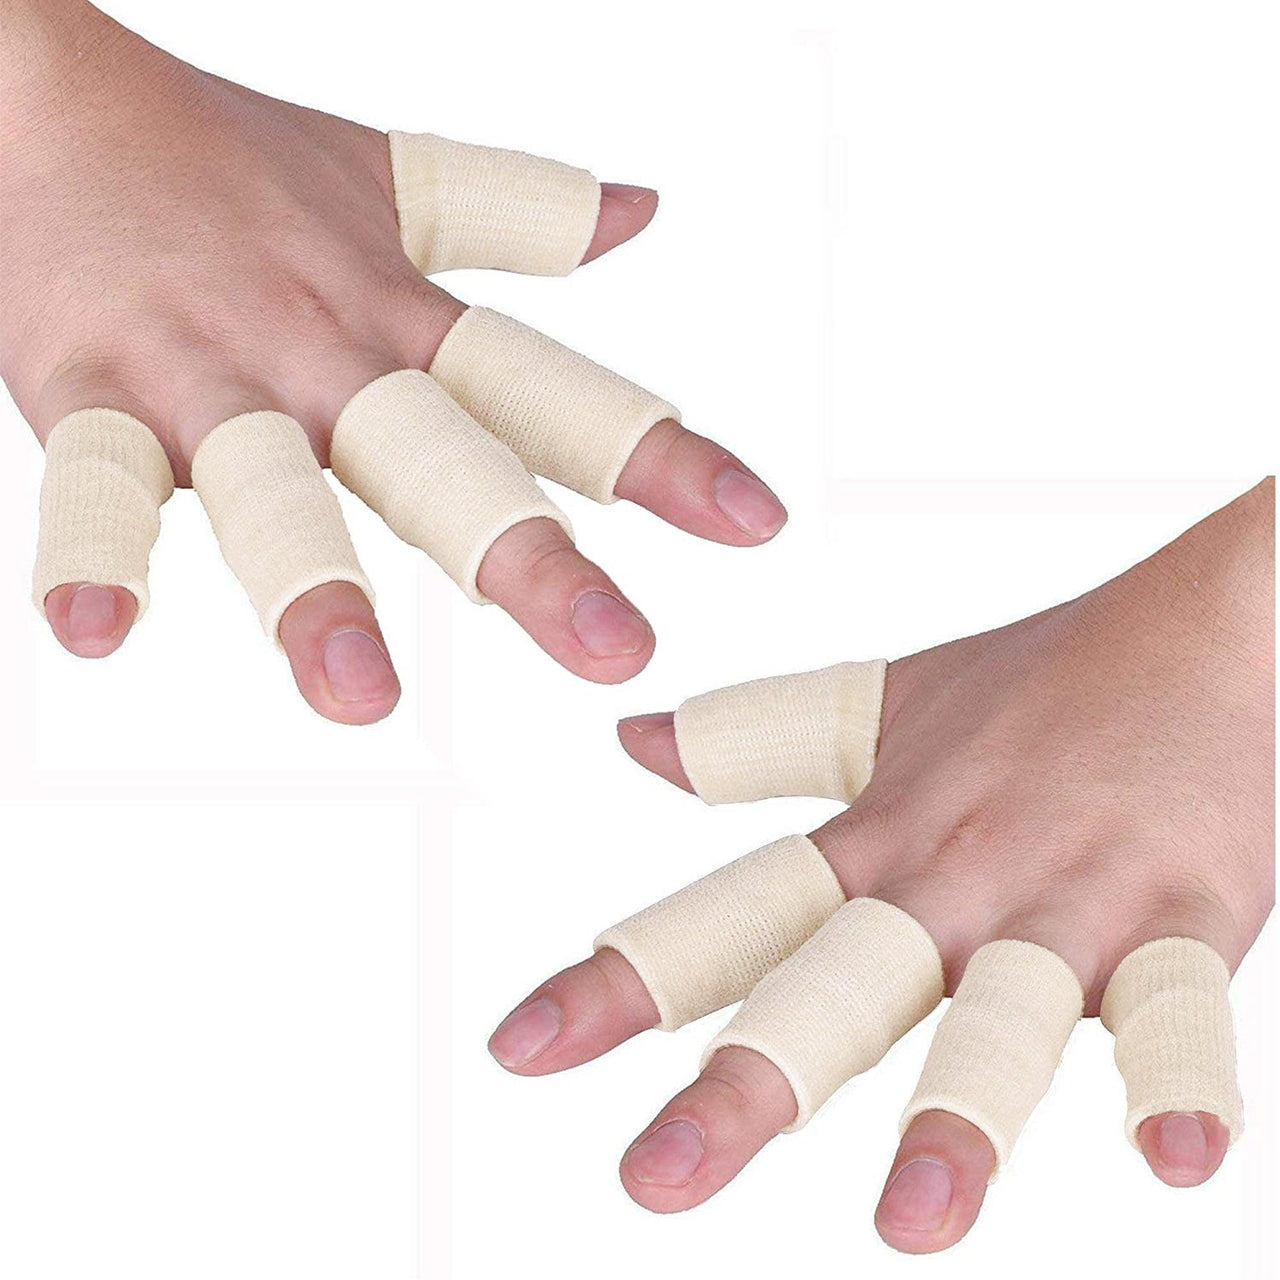 Joyfit Finger Support (Pack of 10)